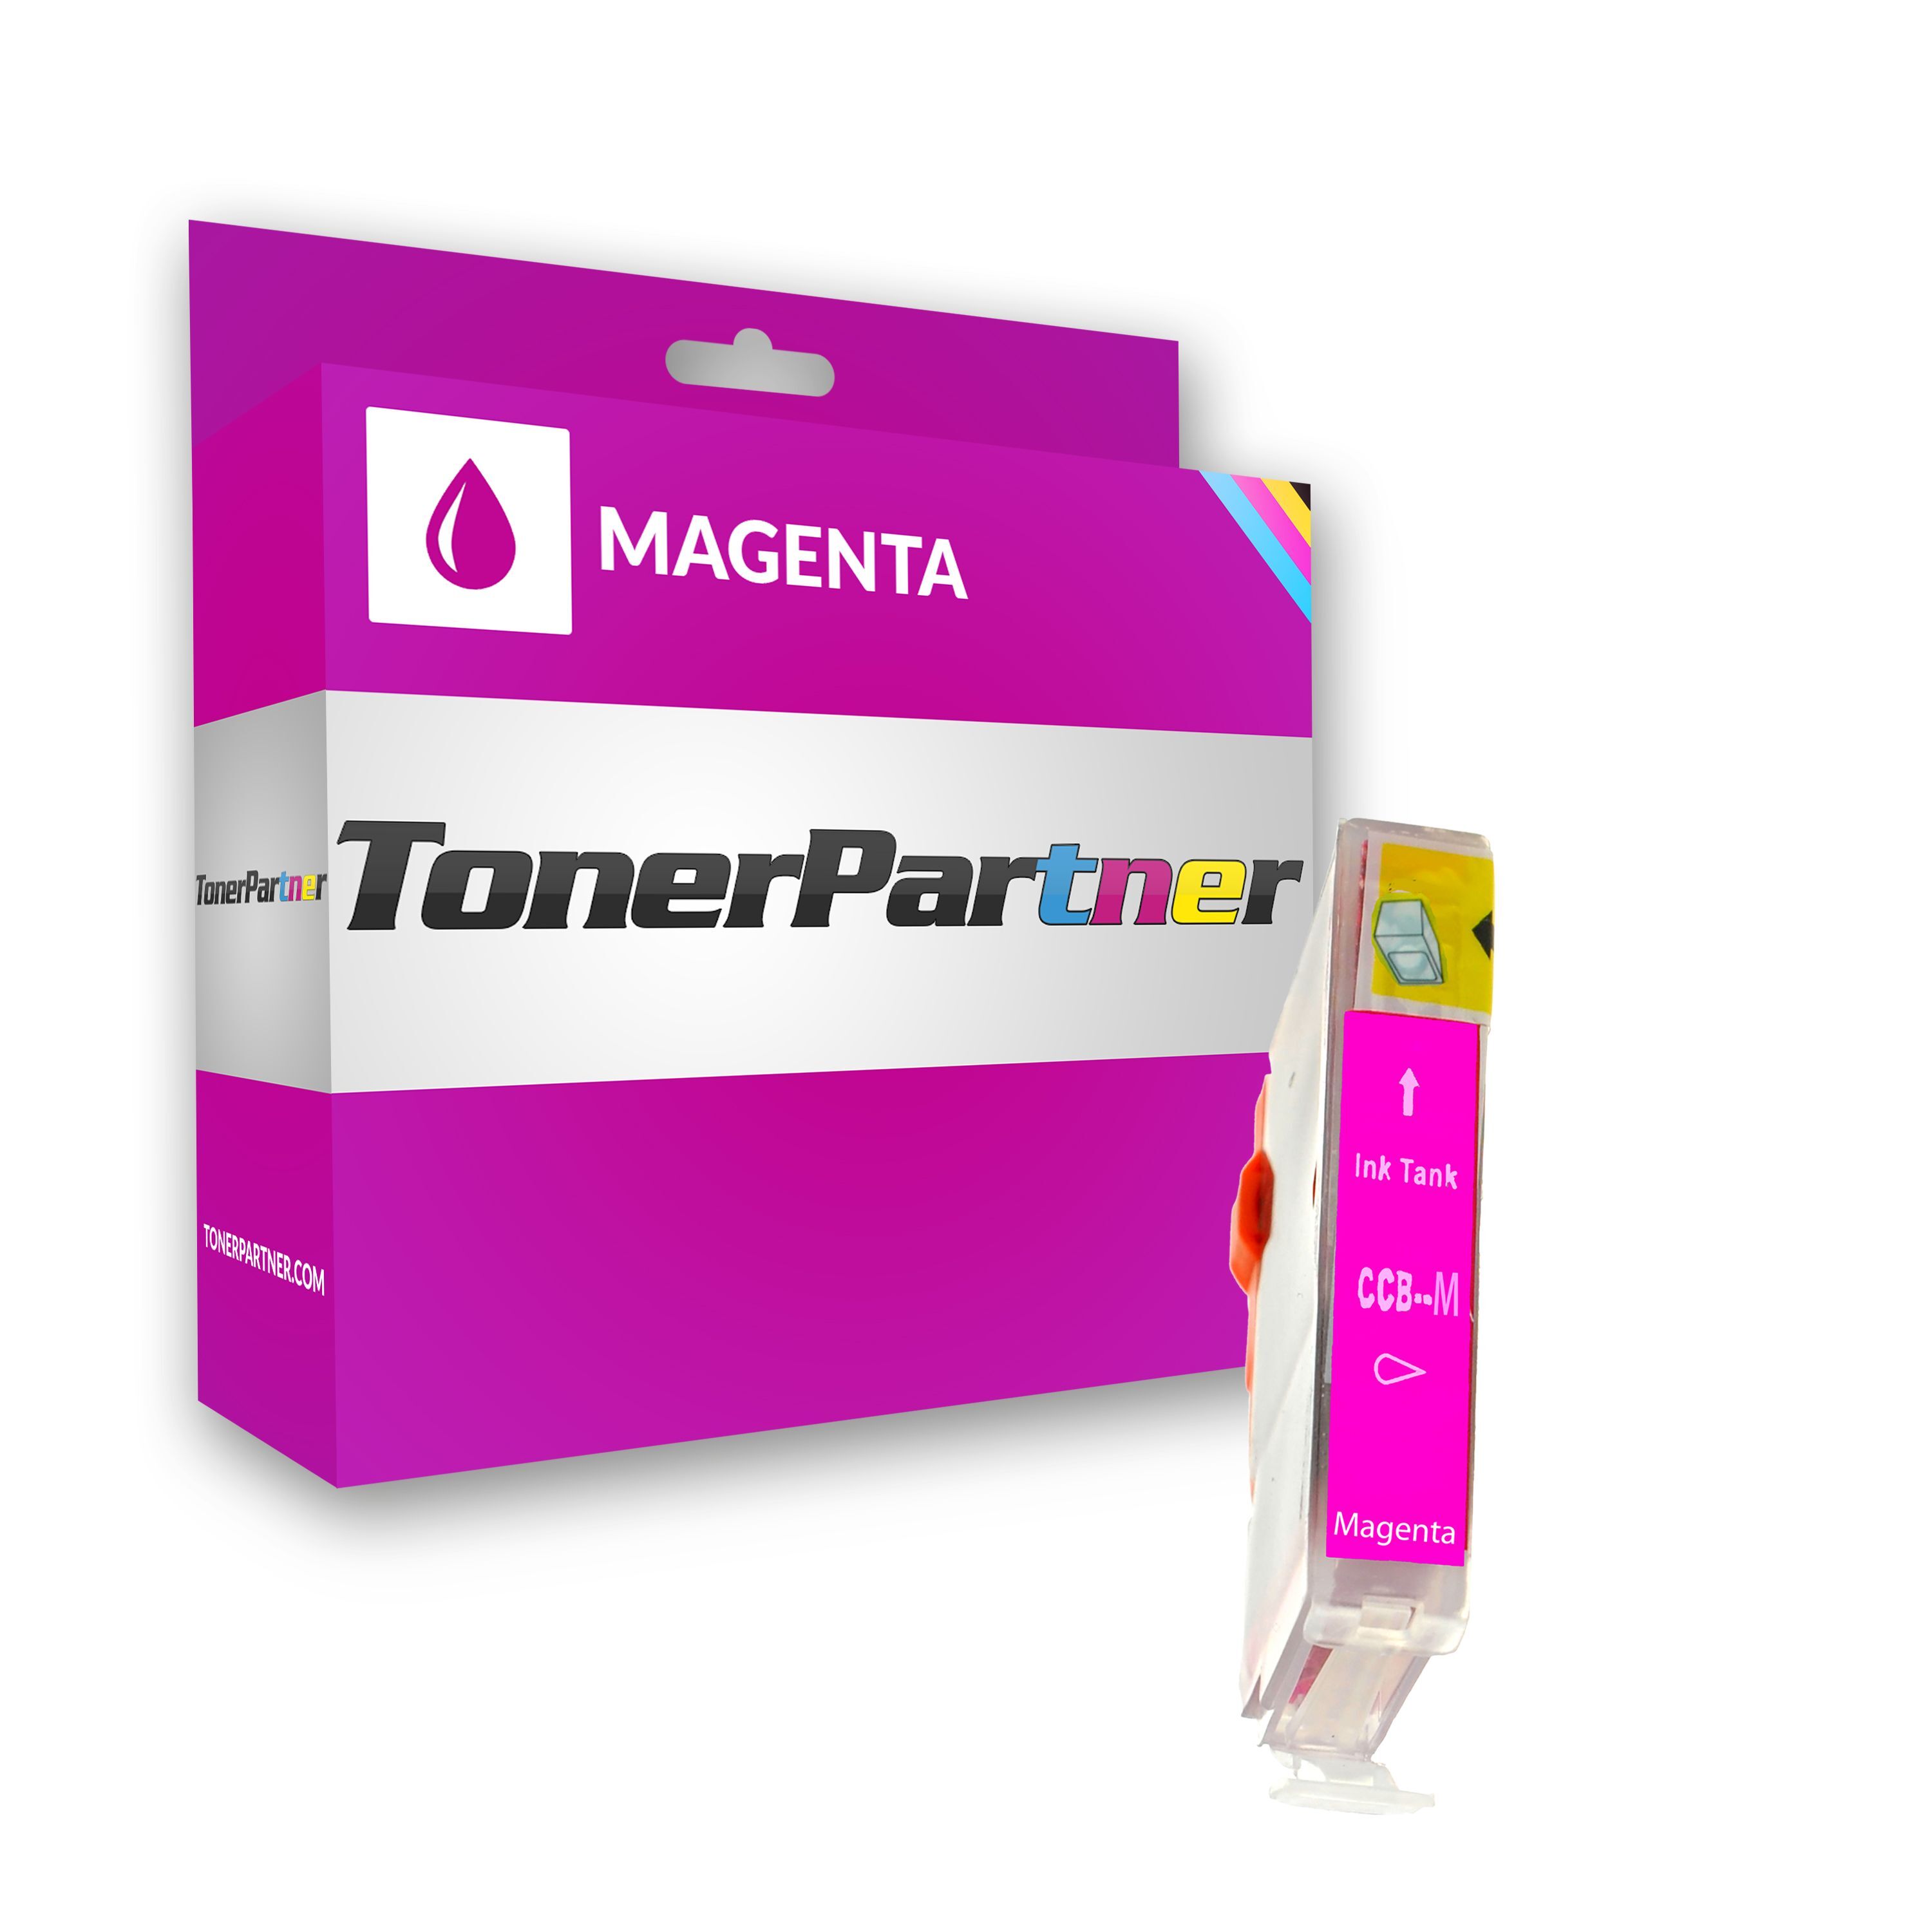 TonerPartner Kompatibel zu Canon S 4500 Tintenpatrone (BCI-3 EM / 4481 A 002) magenta, 400 Seiten, 0,86 Rp pro Seite, Inhalt: 12 ml von TonerPartner